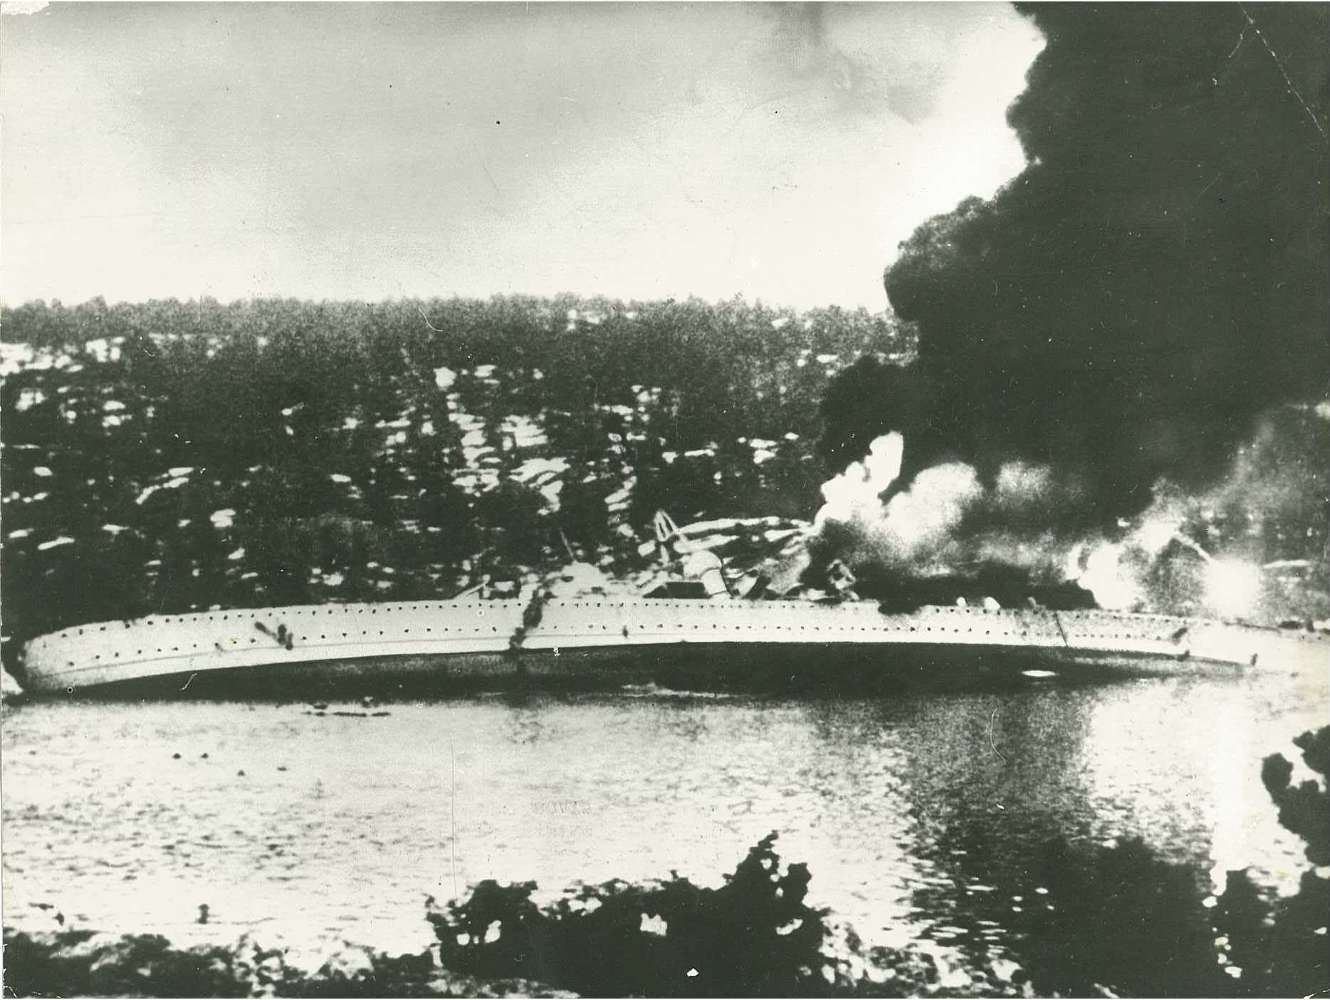 Svart-hvit foto av senkingen avBlücher. Den tyske krysseren Blücher ble 9. april 1940 senket i Drøbaksundet i Oslofjorden. Foto: NTBs krigsarkiv, Riksarkivet